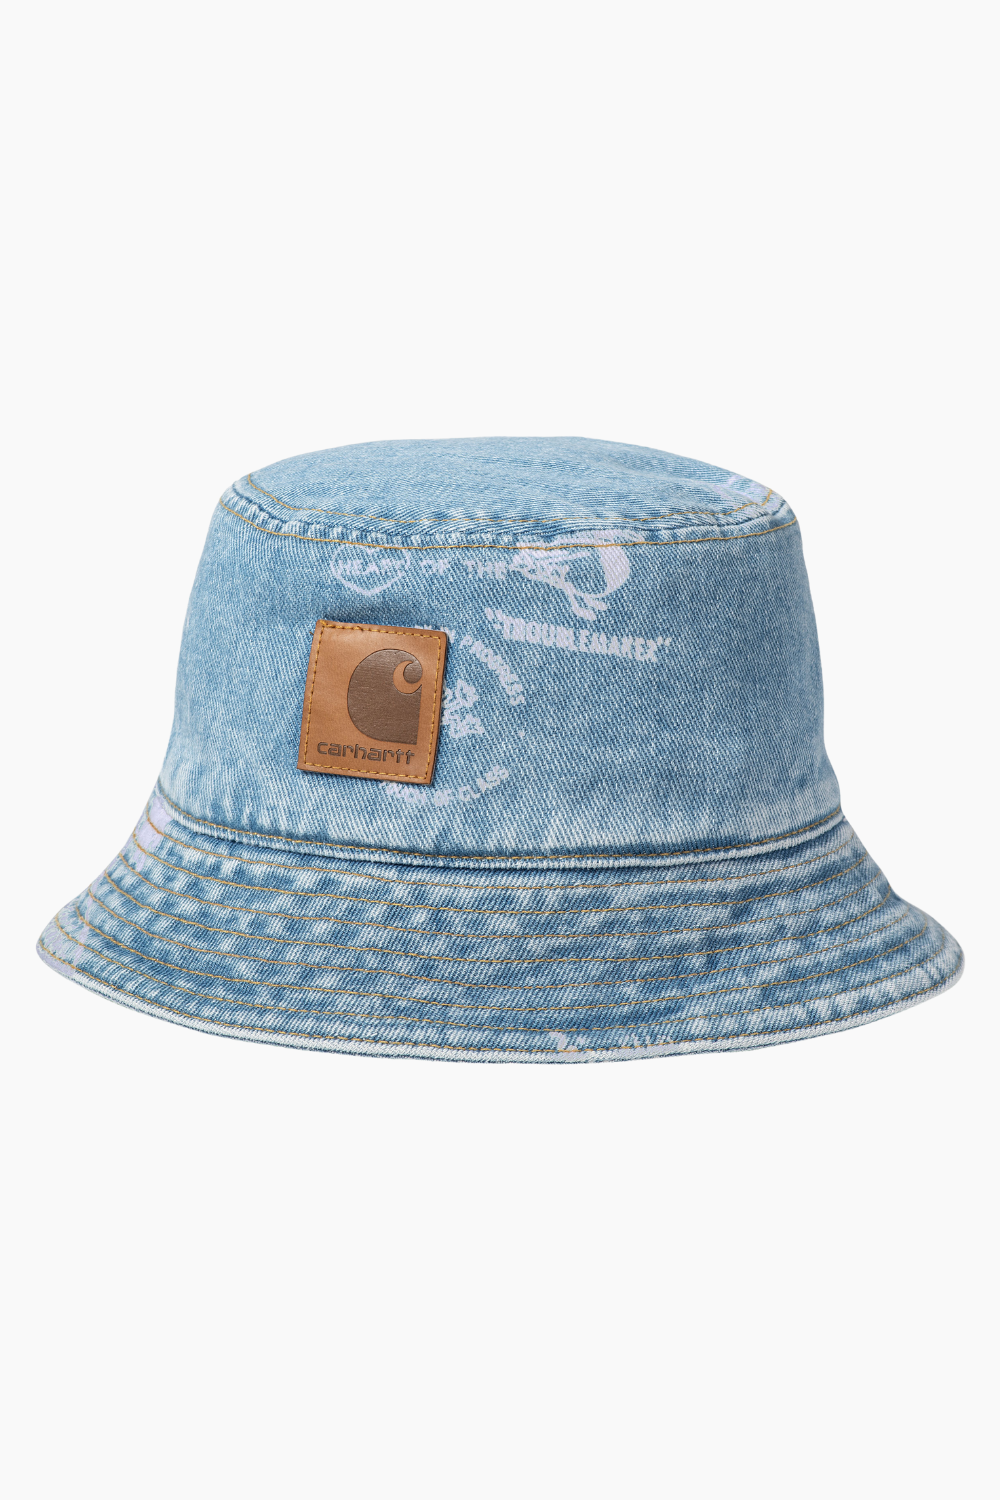 Se Stamp Bucket Hat - Stamp Print (Blue Bleached) - Carhartt WIP - Blå M/L hos QNTS.dk